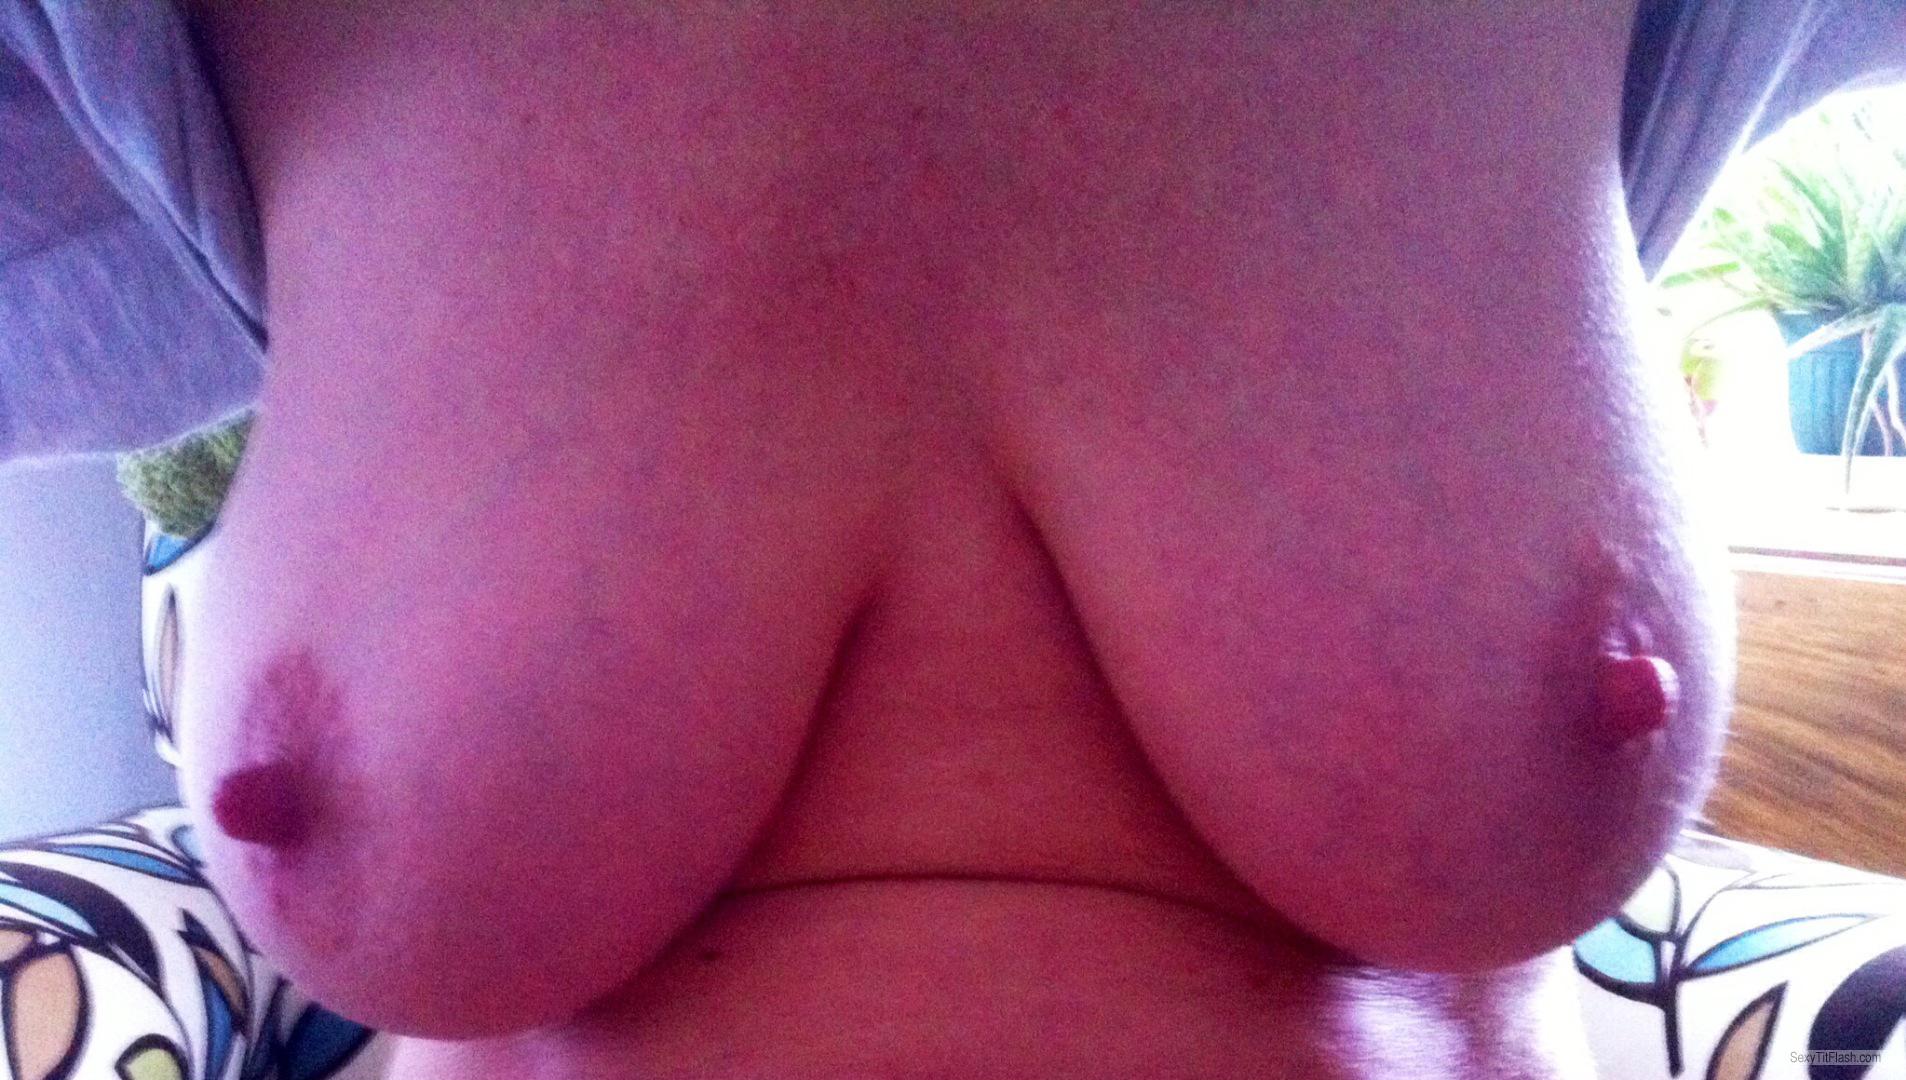 Tit Flash: My Big Tits (Selfie) - Jessie from Australia